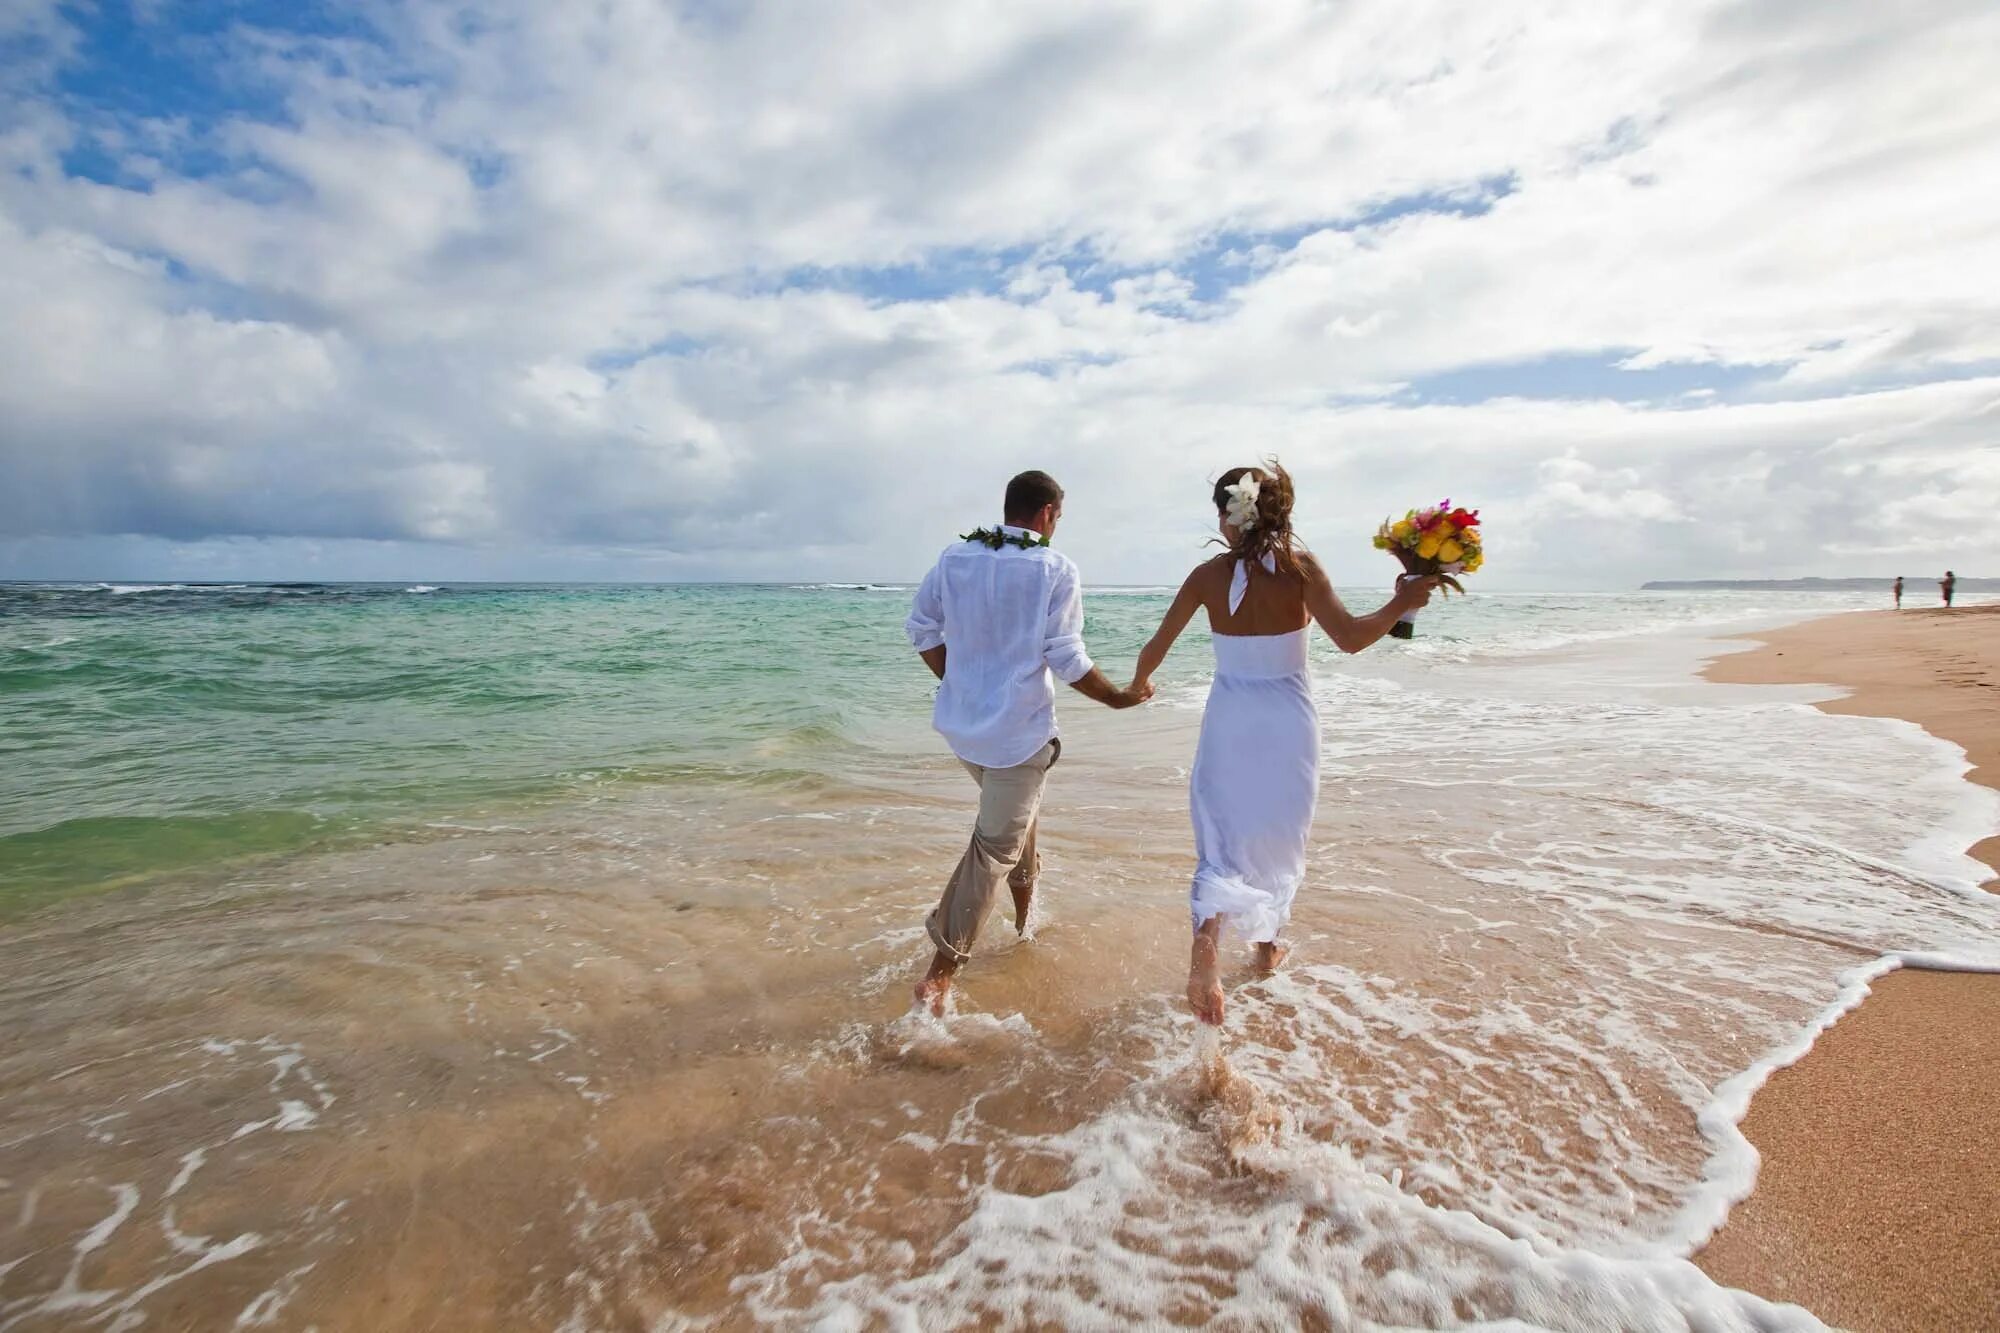 Предложение на берегу океана. Свадьба на море. Свадьба у океана. Свадьба на берегу моря. Свадебная фотосессия на море.